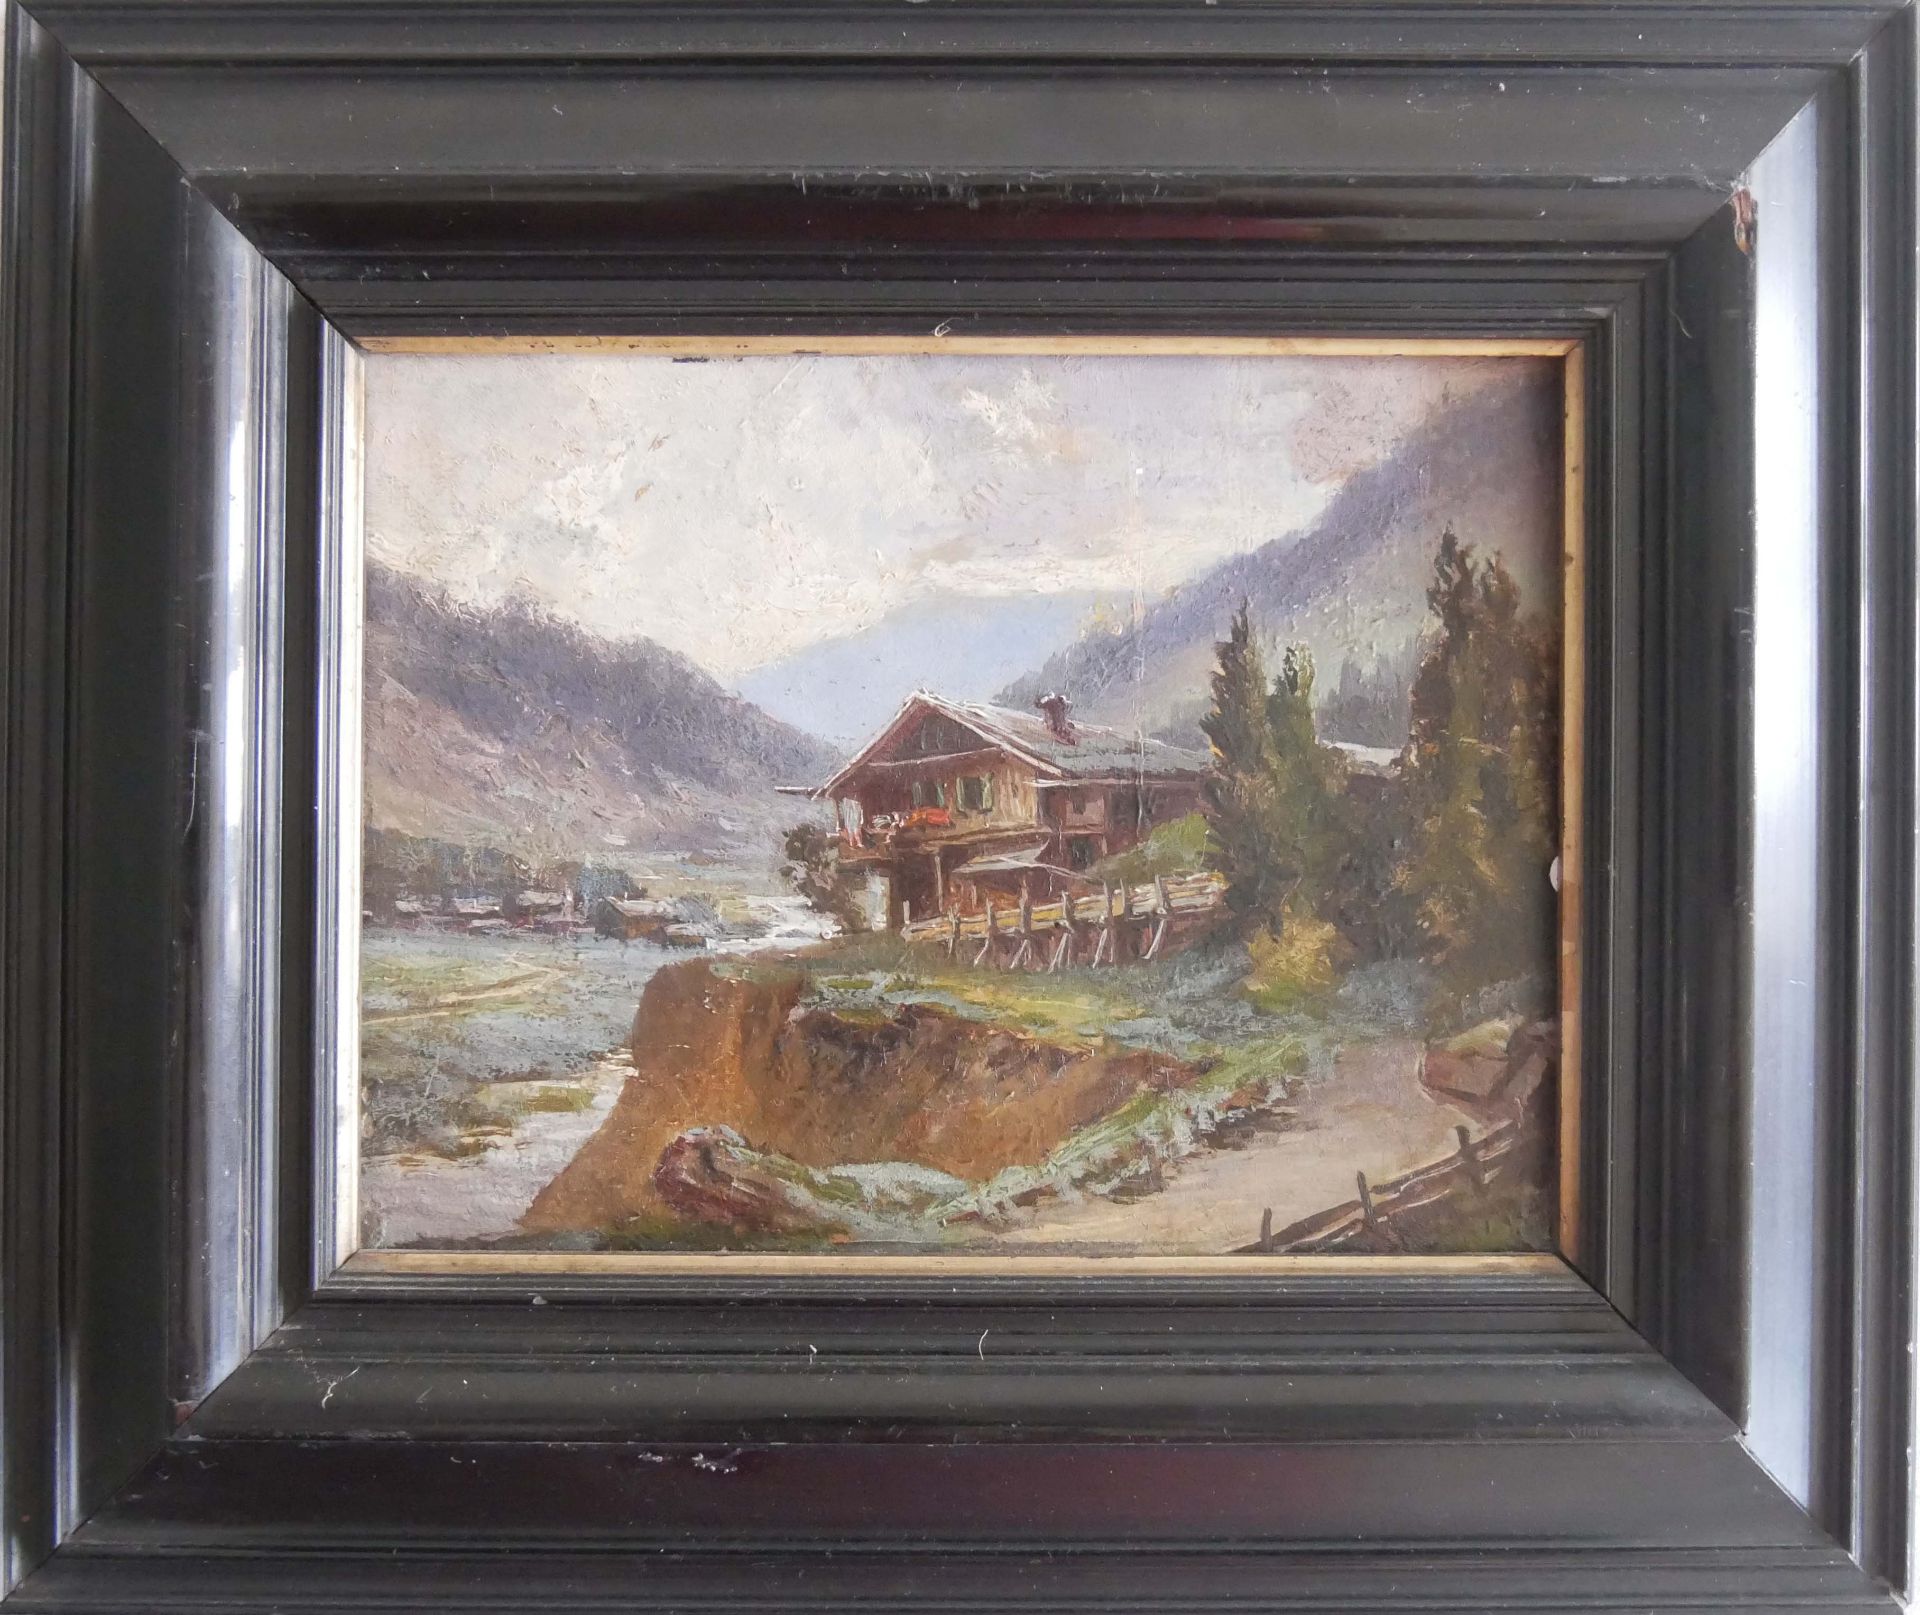 unbekannter Künstler, Ölgemälde auf Platte, "Haus in den Bergen". Gerahmt. Maße mit Rahmen 30,5 x 26